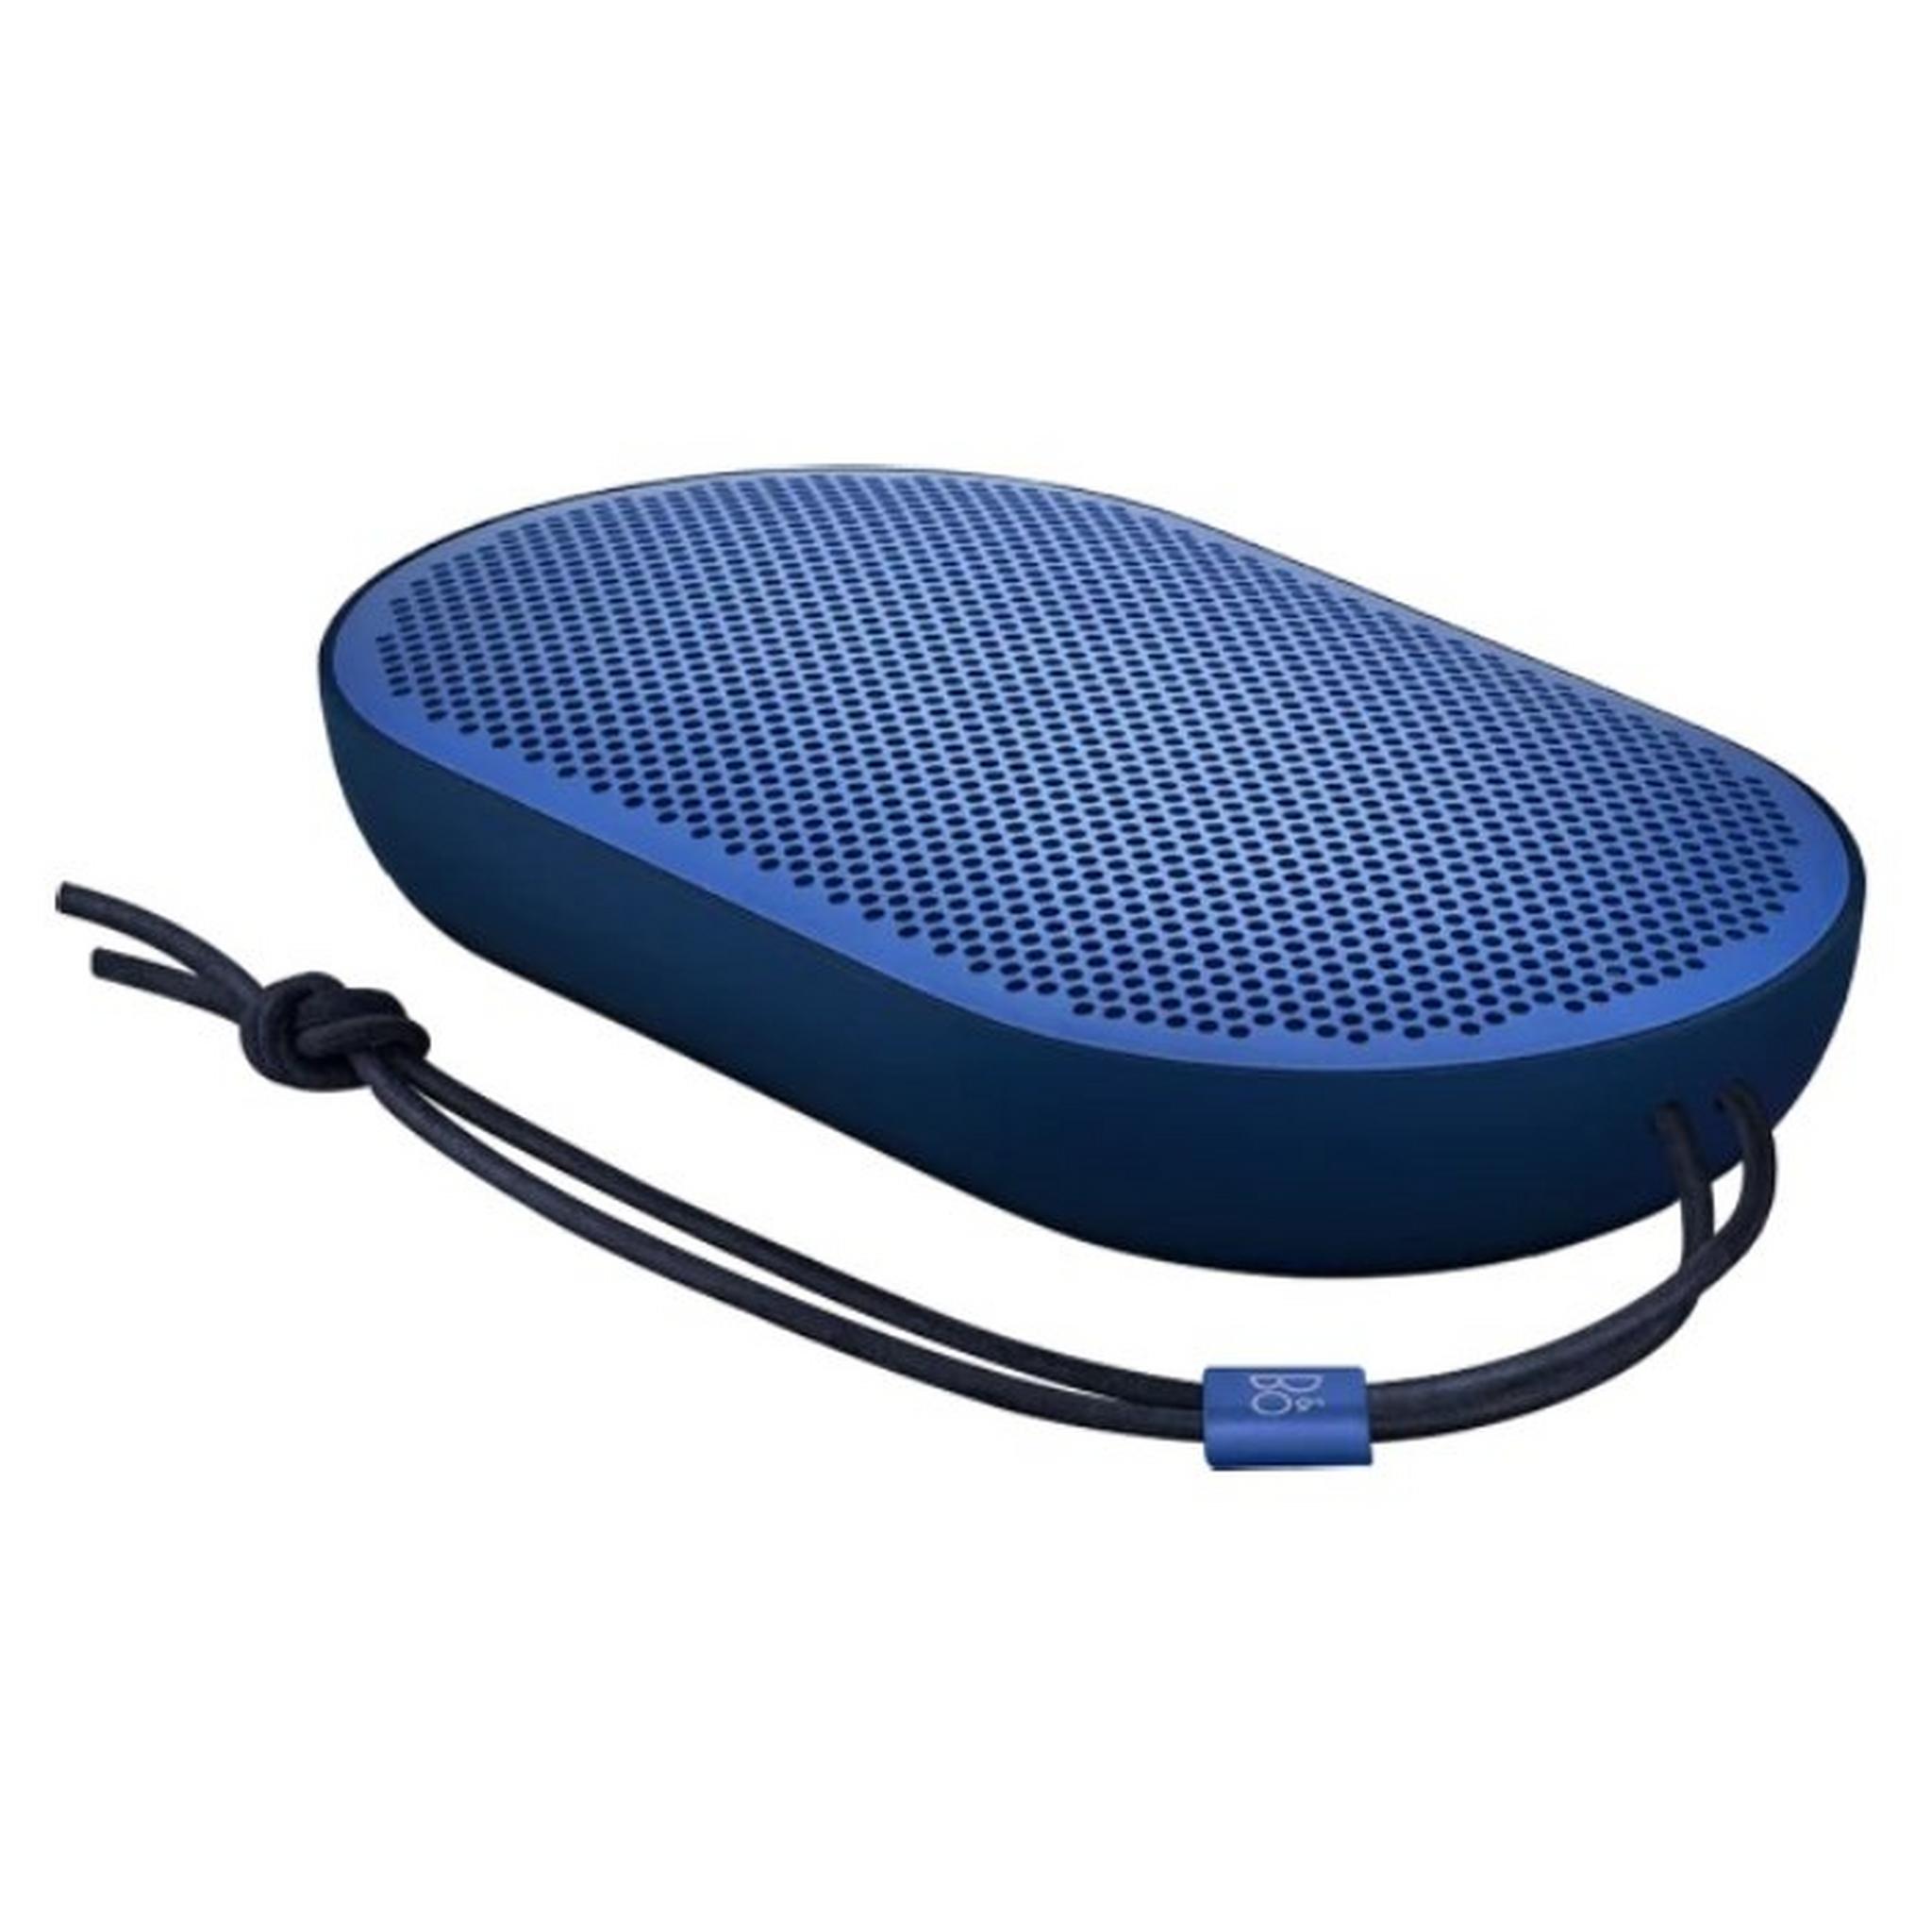 مكبر الصوت لاسلكي المحمول بيوبلاي بي2 بتقنية البلوتوث - أزرق